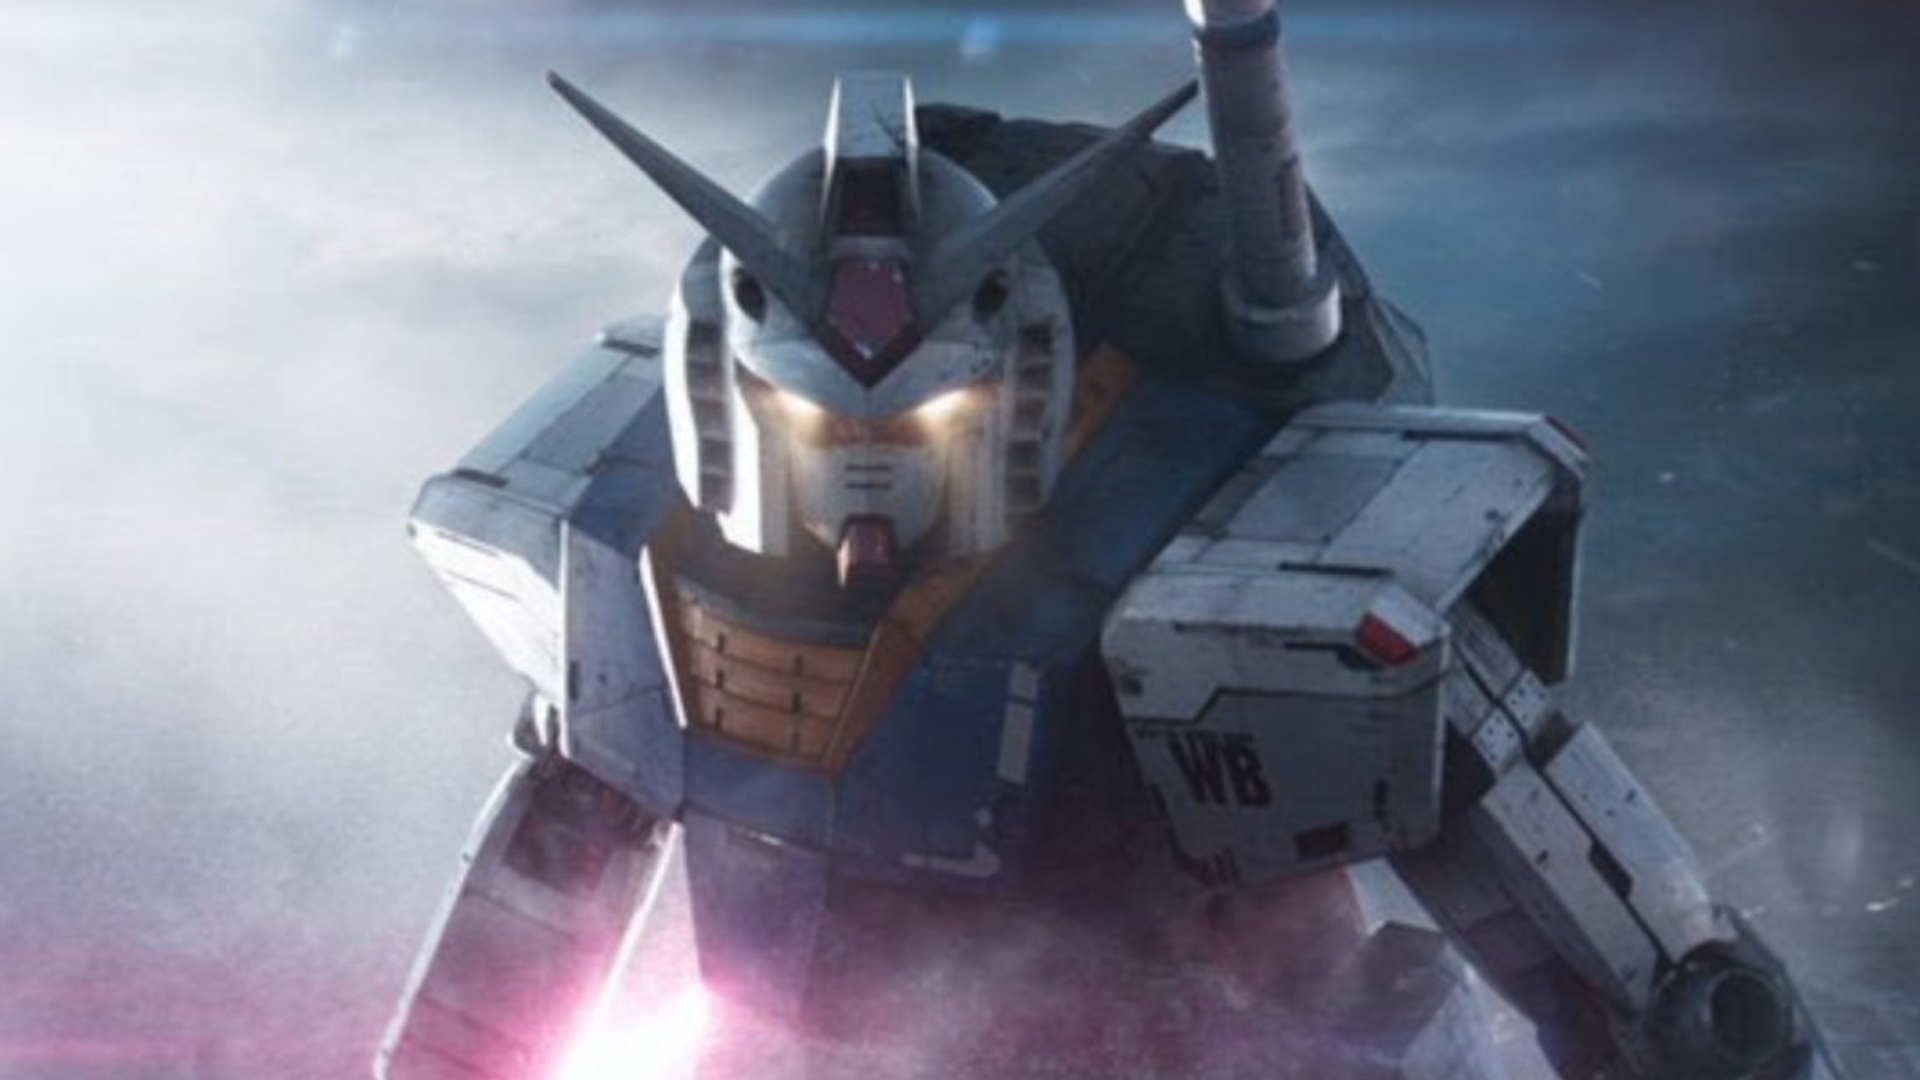 Mướn/Mua Mô Hình Gundam 37 - RX-0 Unicorn Gundam - MG 1/100 Giá Tốt Nhất  Tại LucTieuMi.com